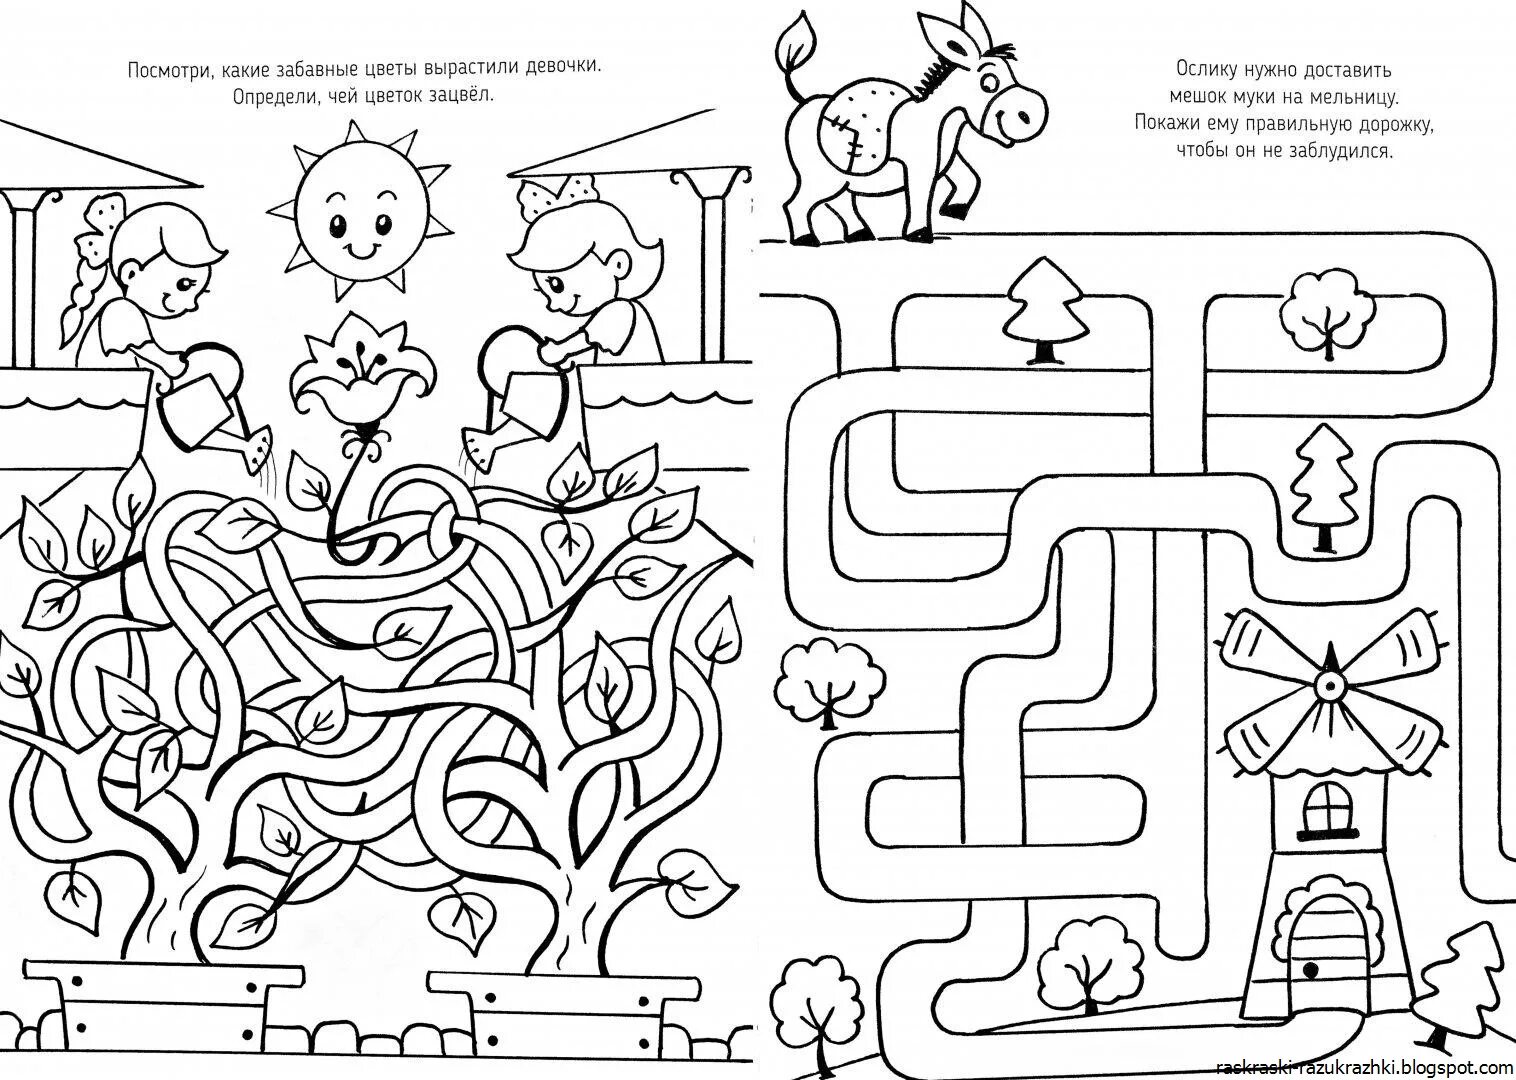 Распечатайте раскраски для детей по нахождению решения головоломки.